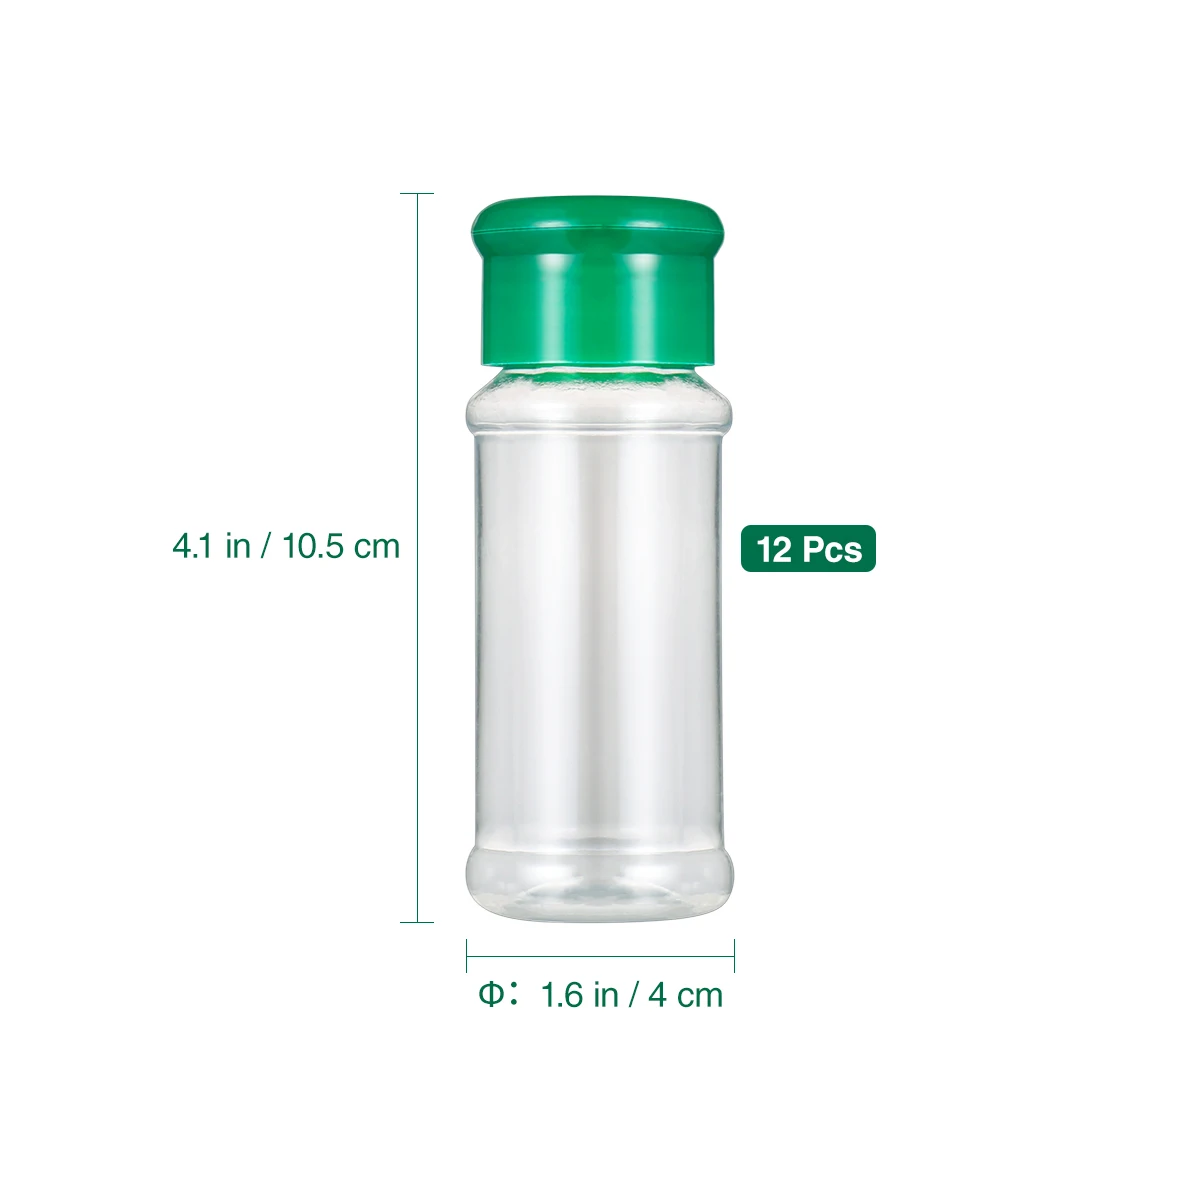 Пластиковый горшок BESTONZON для приправ 12 шт. перечница соляная банка бутылки кухни